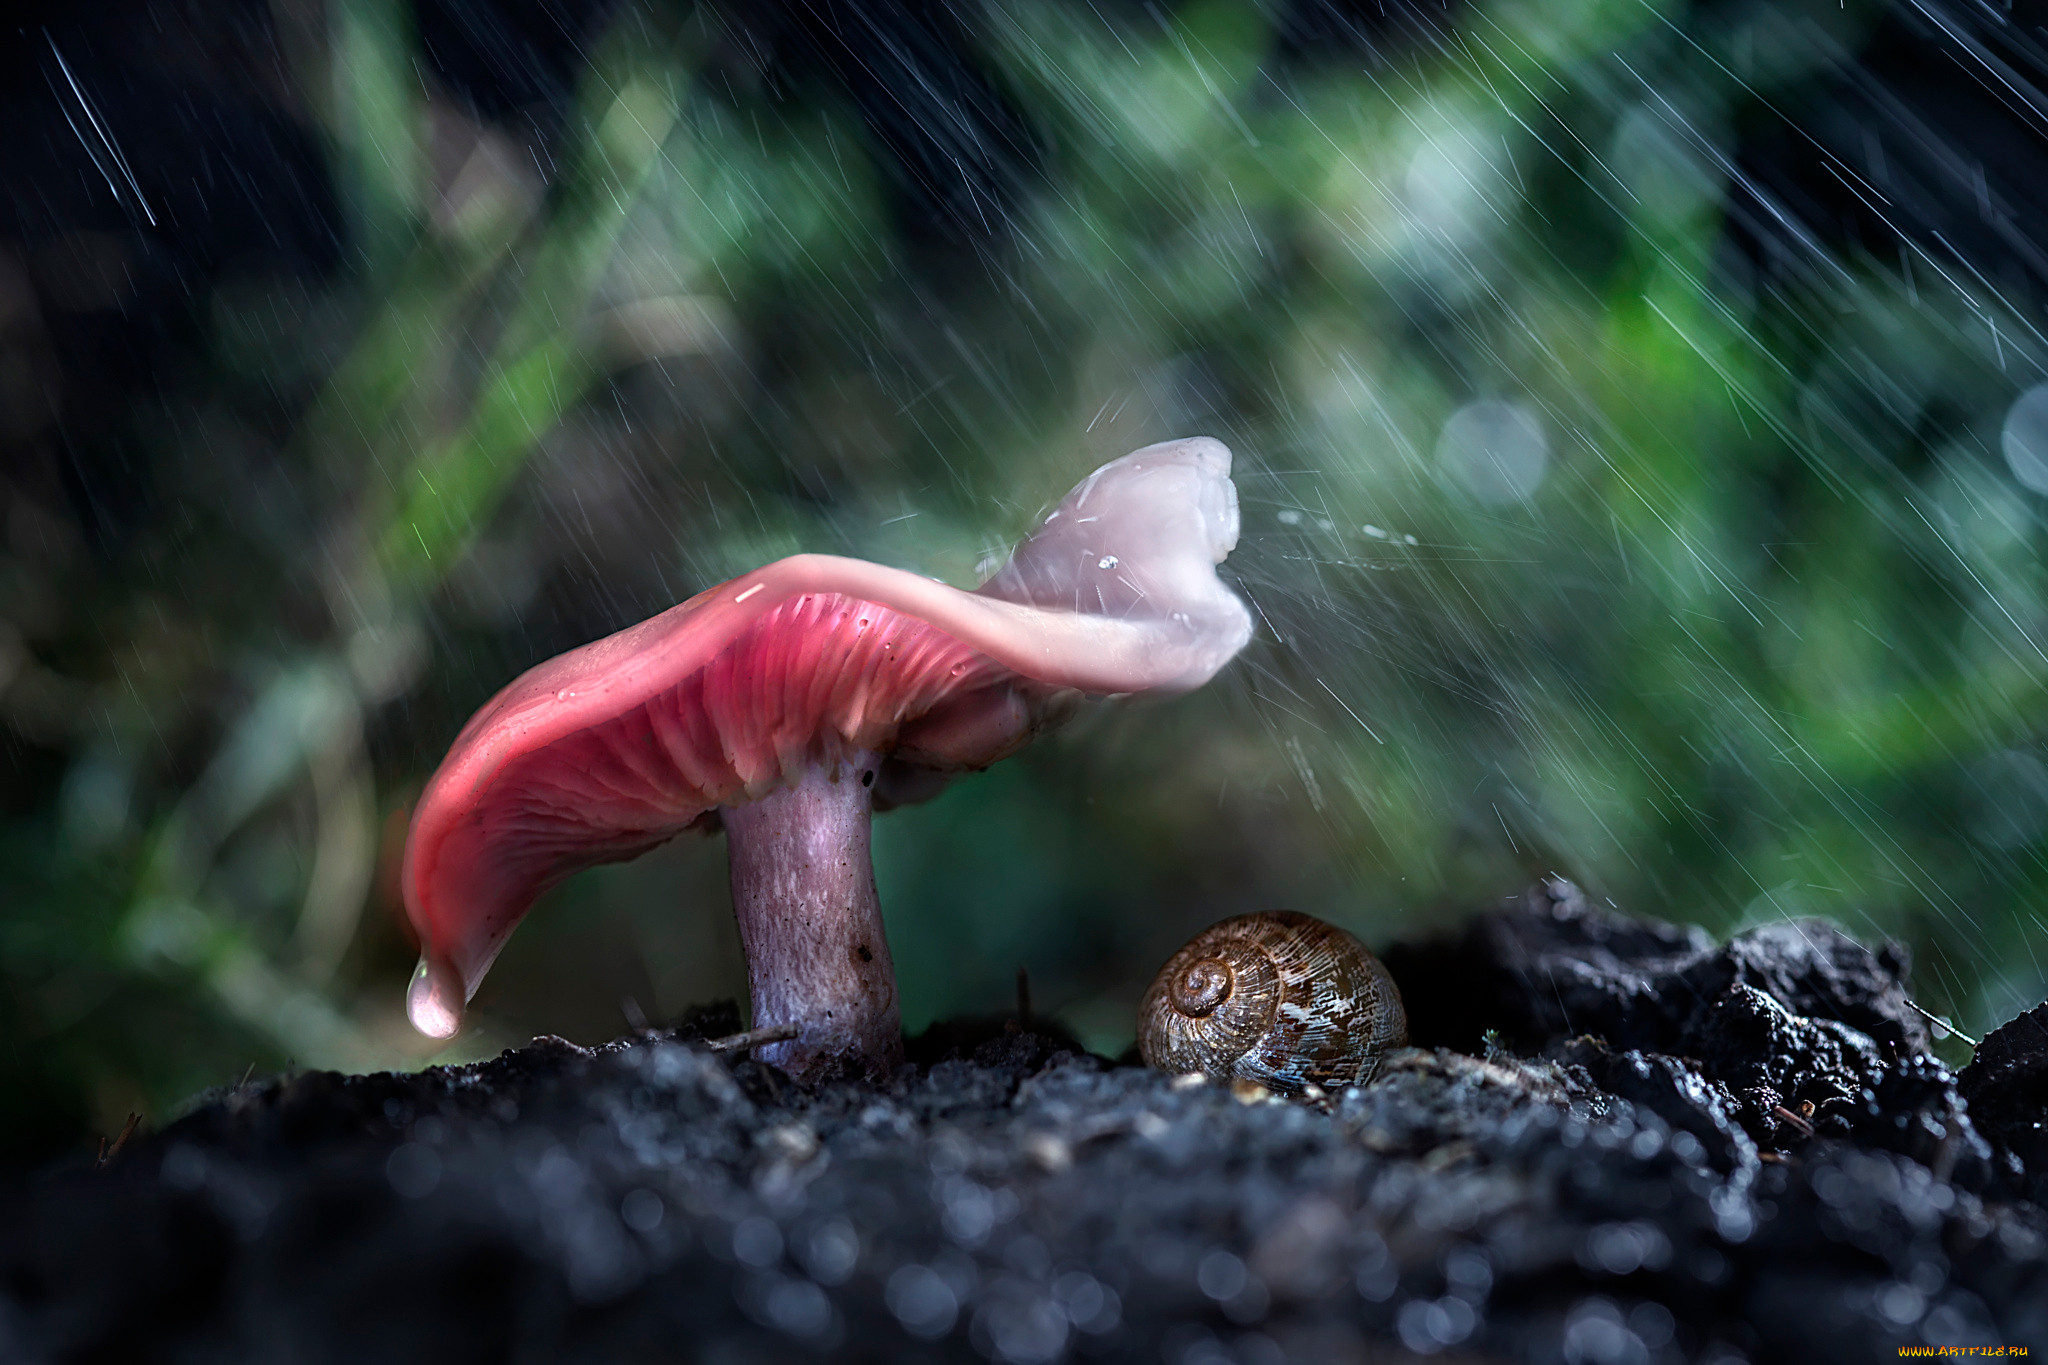 Rain animals. Грибы Макросъемка. Грибы после дождя. Дождь грибы. Грибы под дождём в лесу.